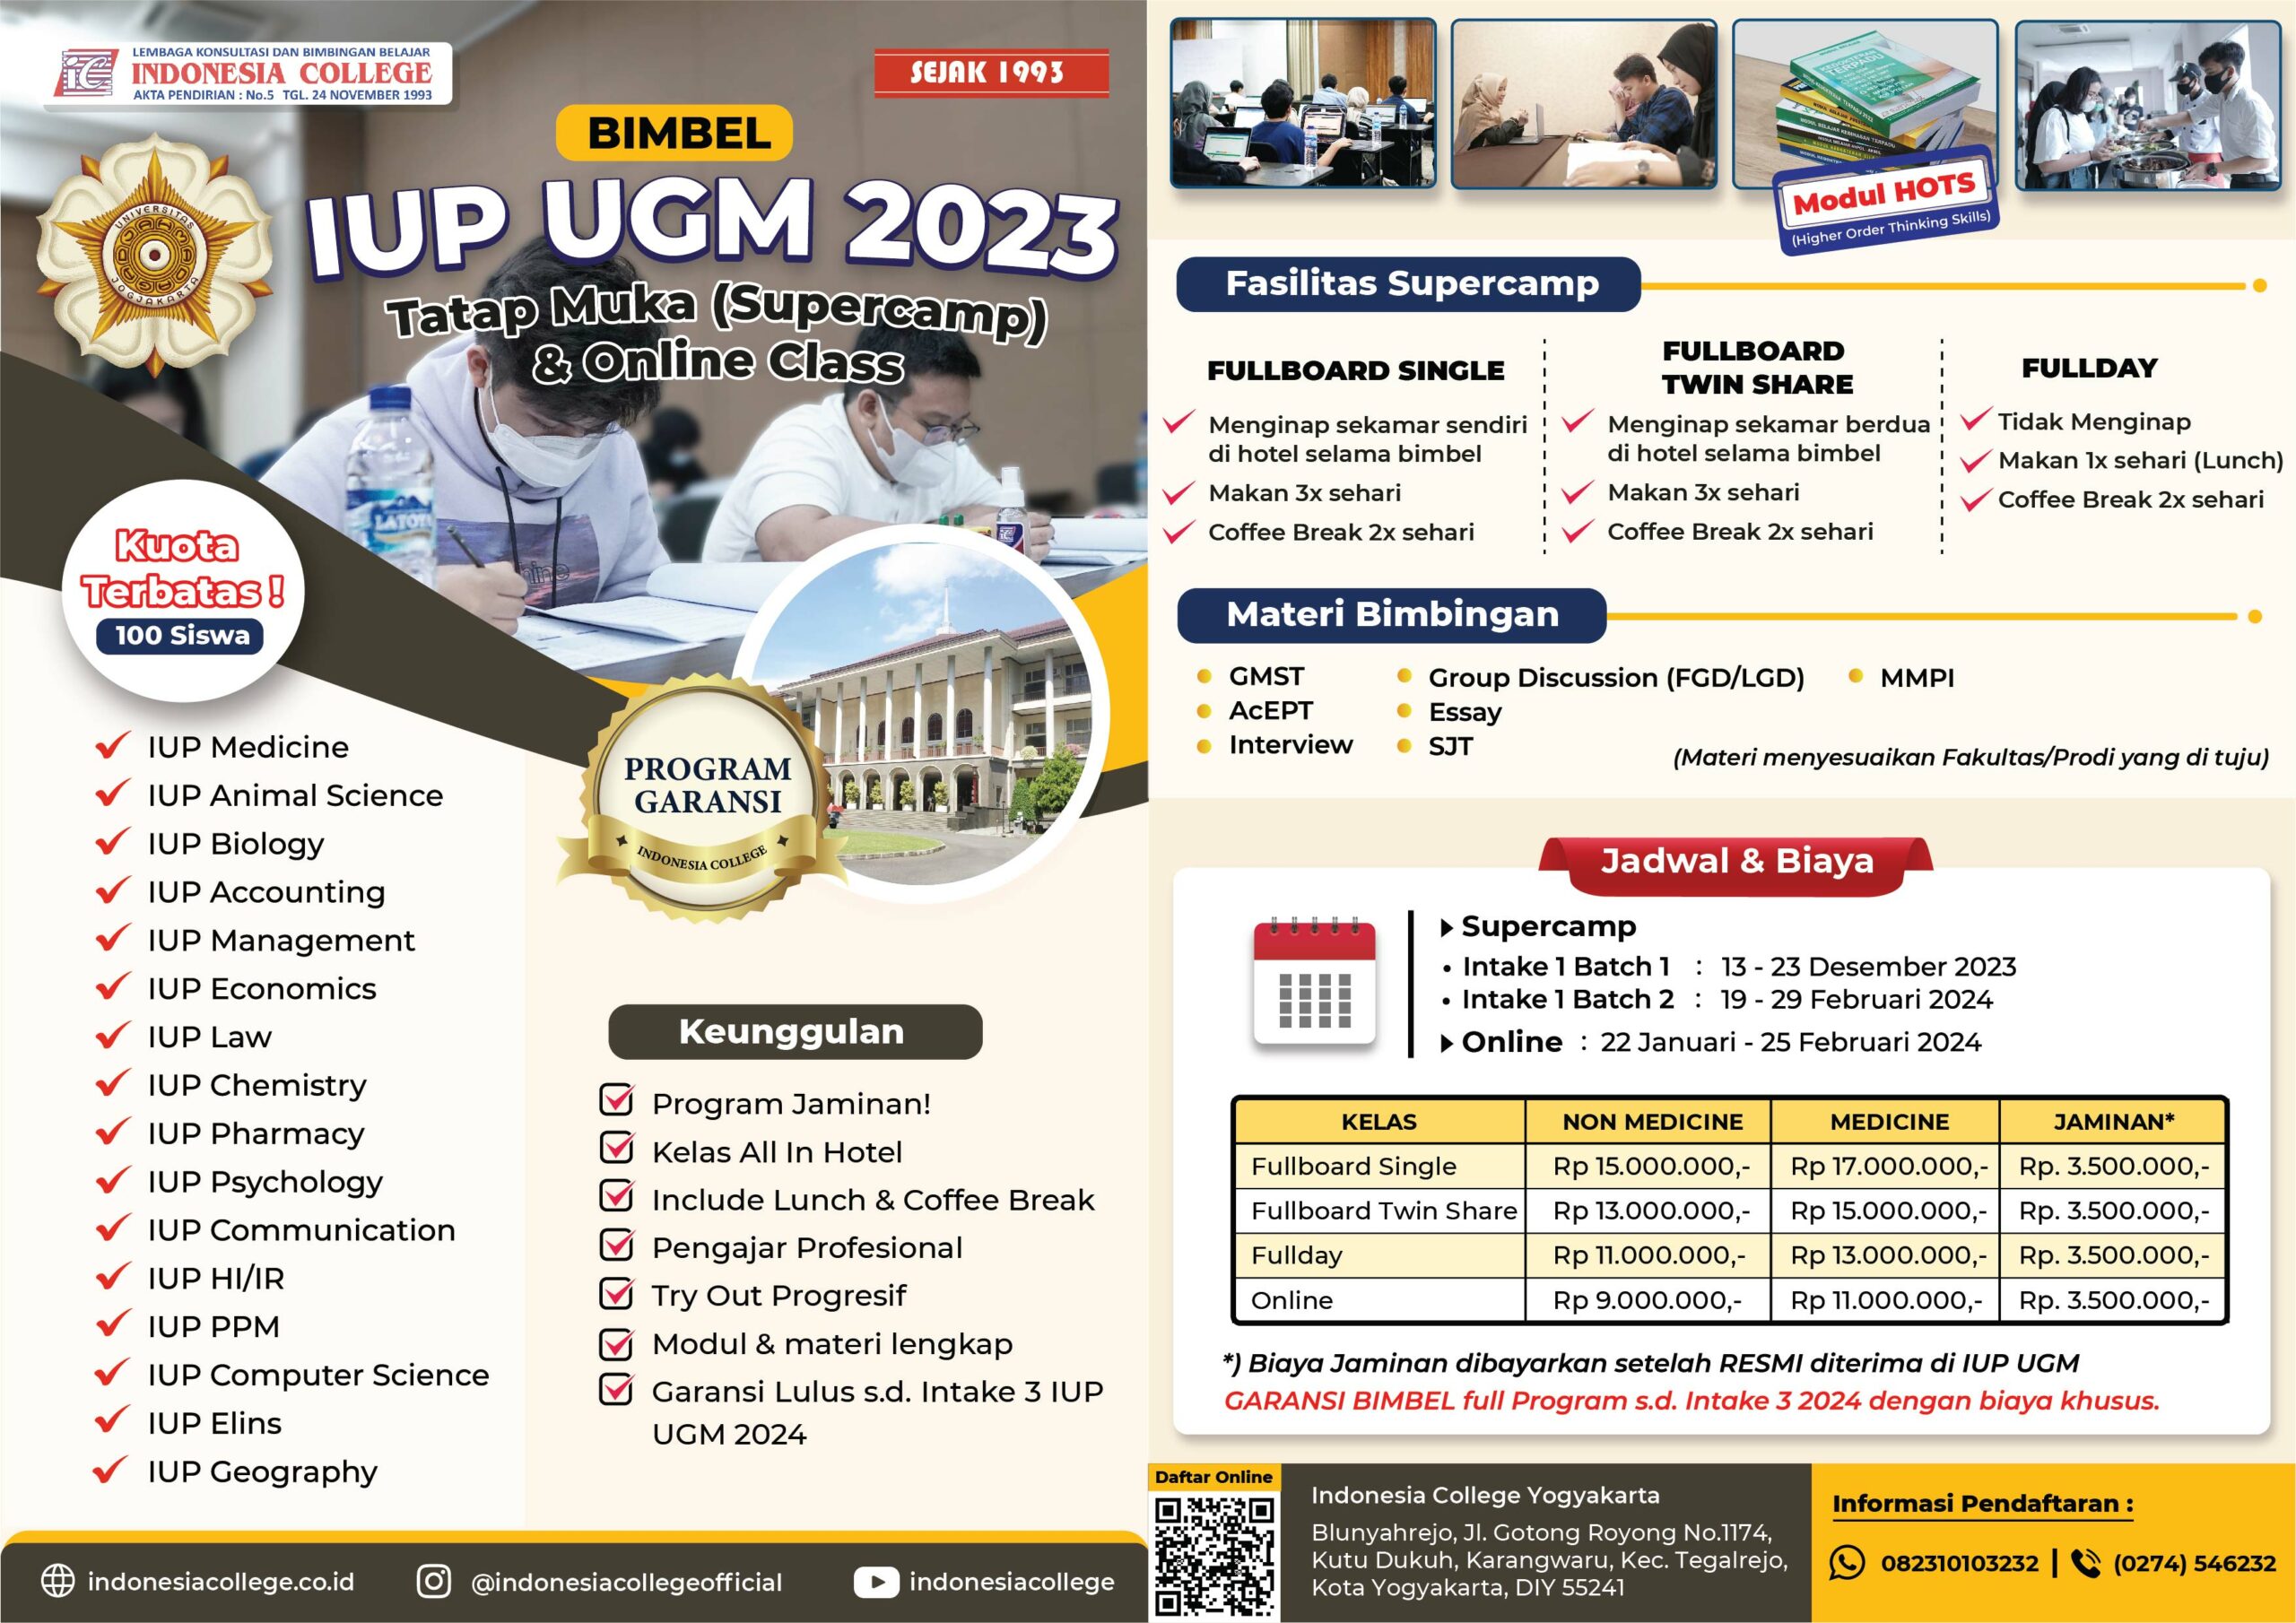 Bimbel IUP UGM 2024 Supercamp